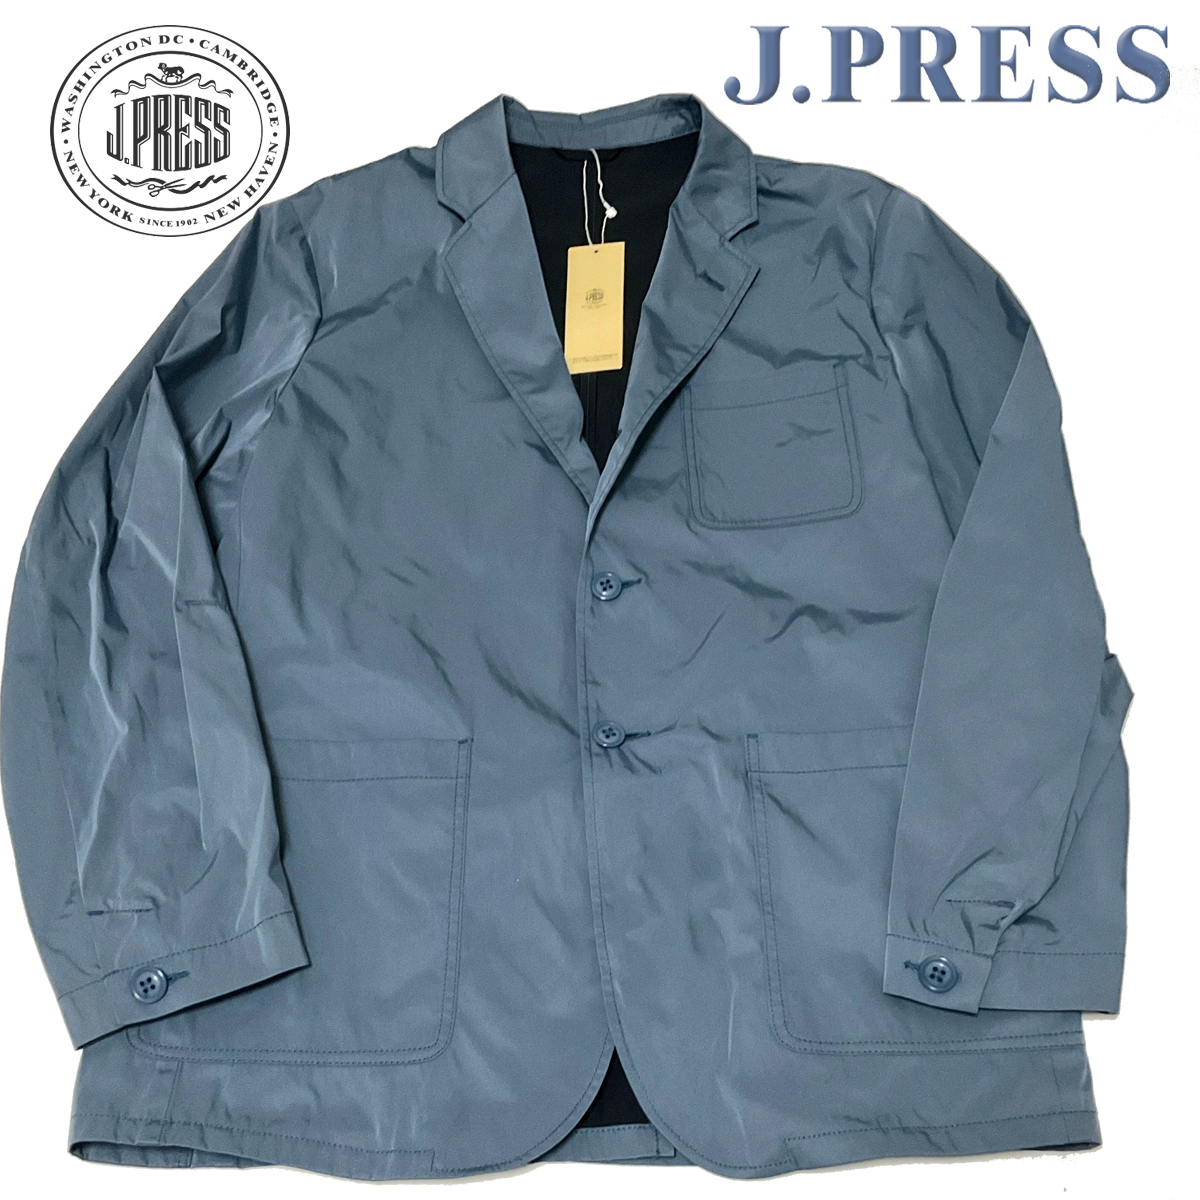 ☆☆ JP362L 新品/春夏 J.PRESS Jプレス メモリー素材 クラークジャケット パッカブル仕様 オンワード樫山